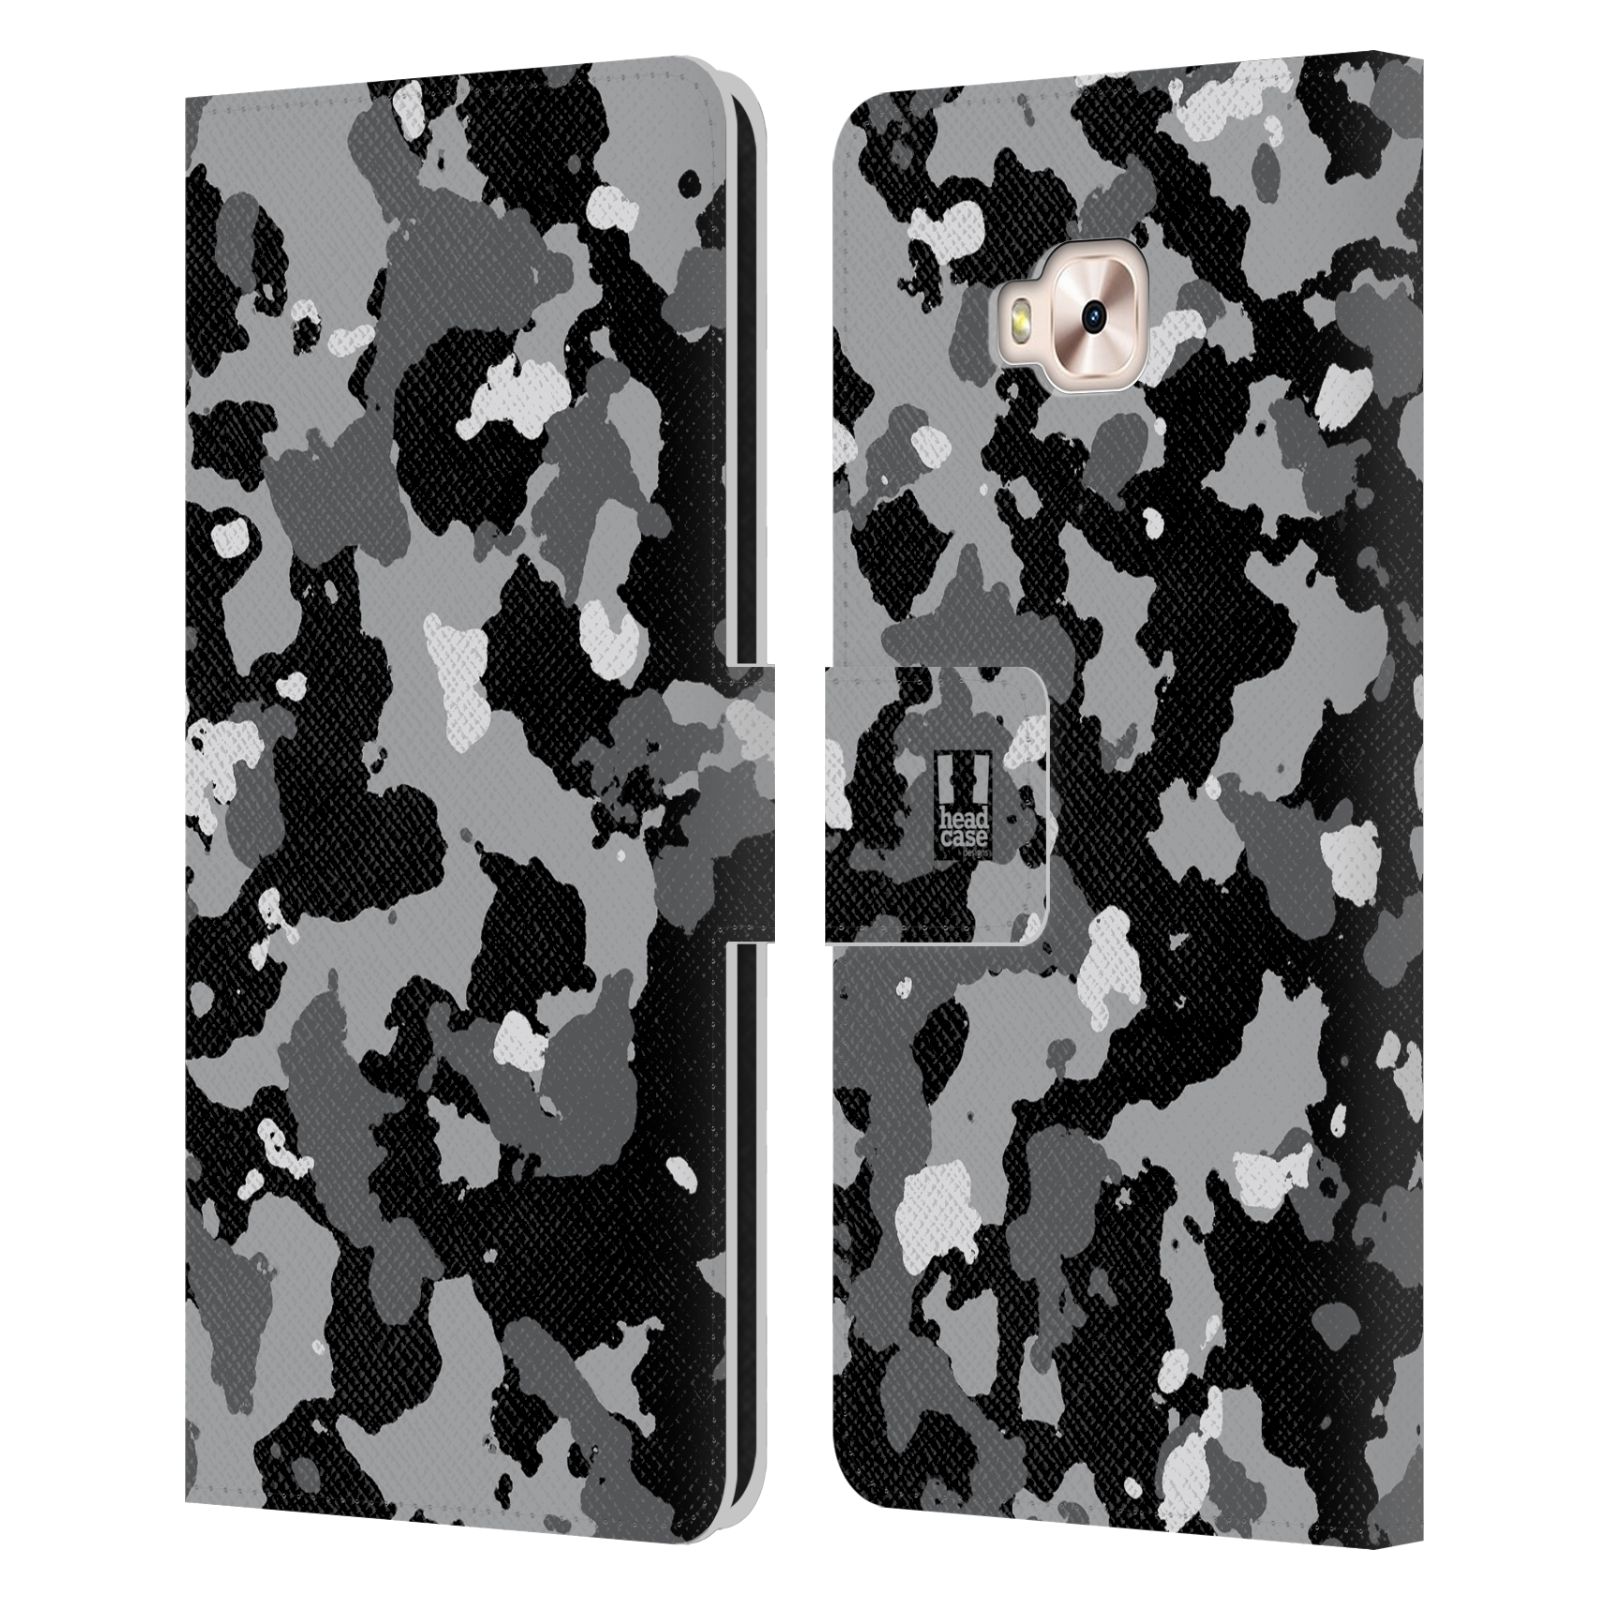 Pouzdro na mobil Asus Zenfone 4 Selfie Pro ZD552KL - Head Case - kamuflaž černá a šedá